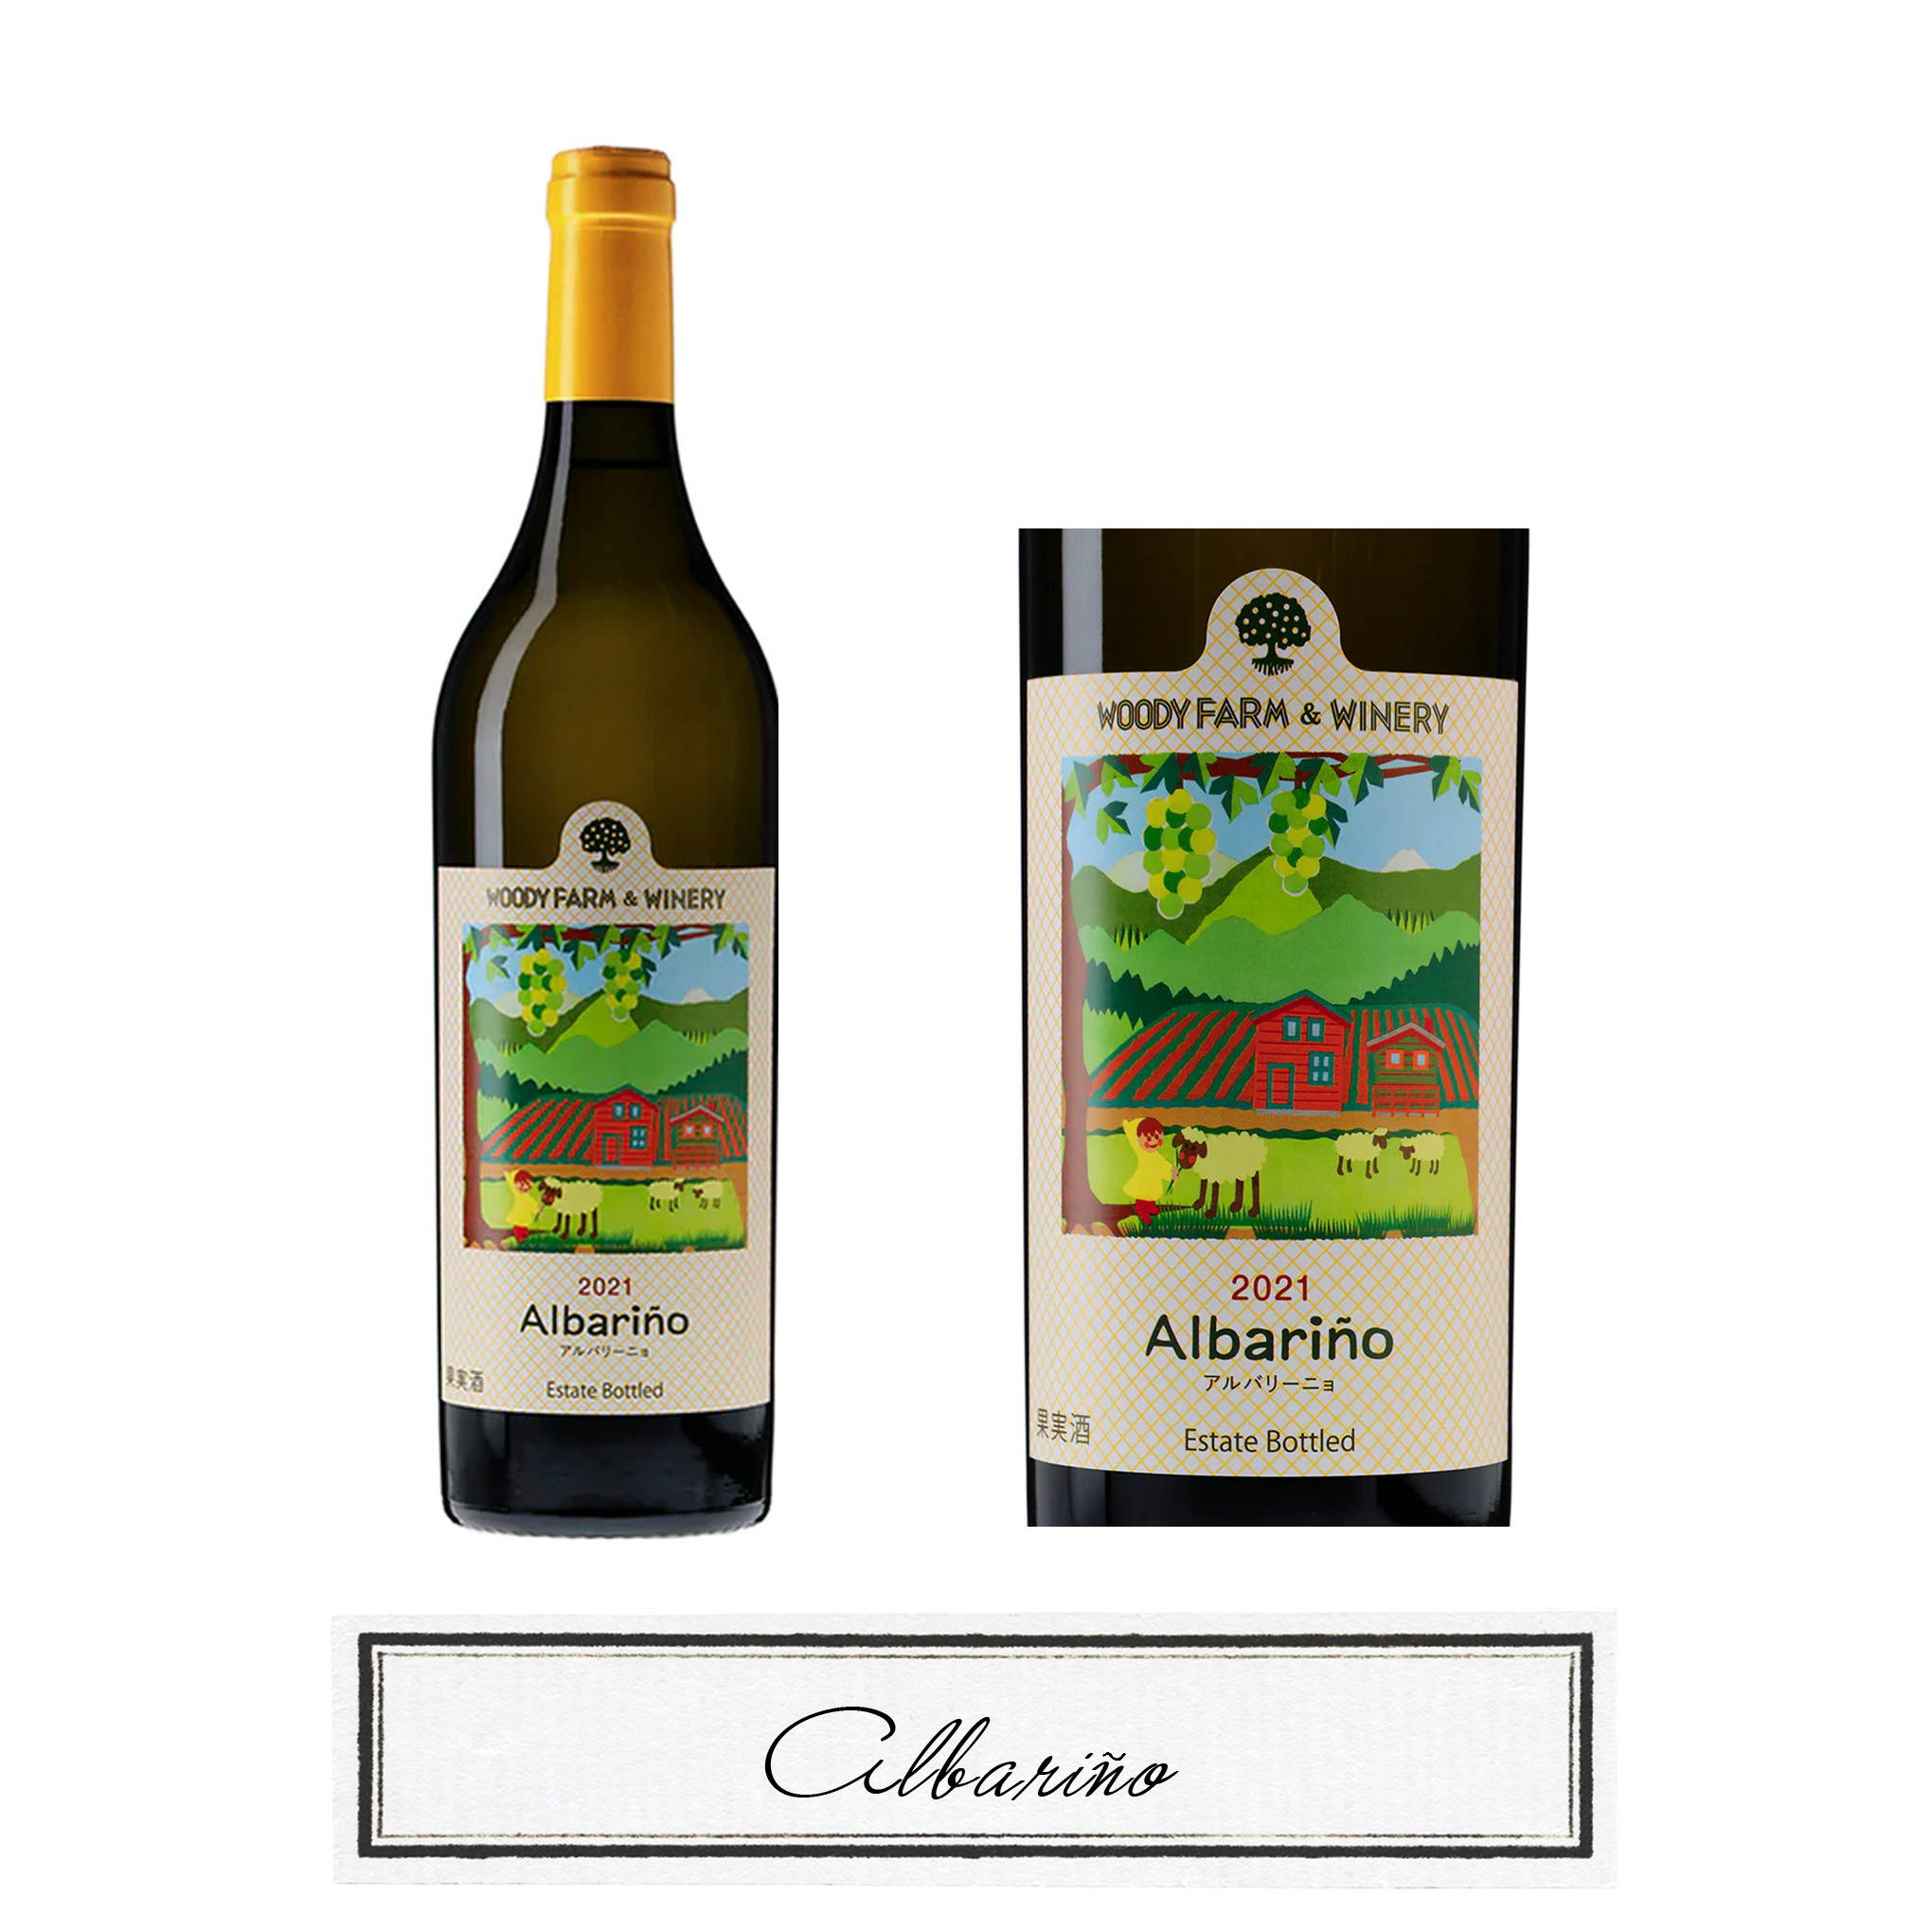 スペイン原産ブドウ品種「アルバリーニョ」の魅惑的な香りが広がる白ワイン『ウッディファーム＆ワイナリー/アルバリーニョ 2021』。